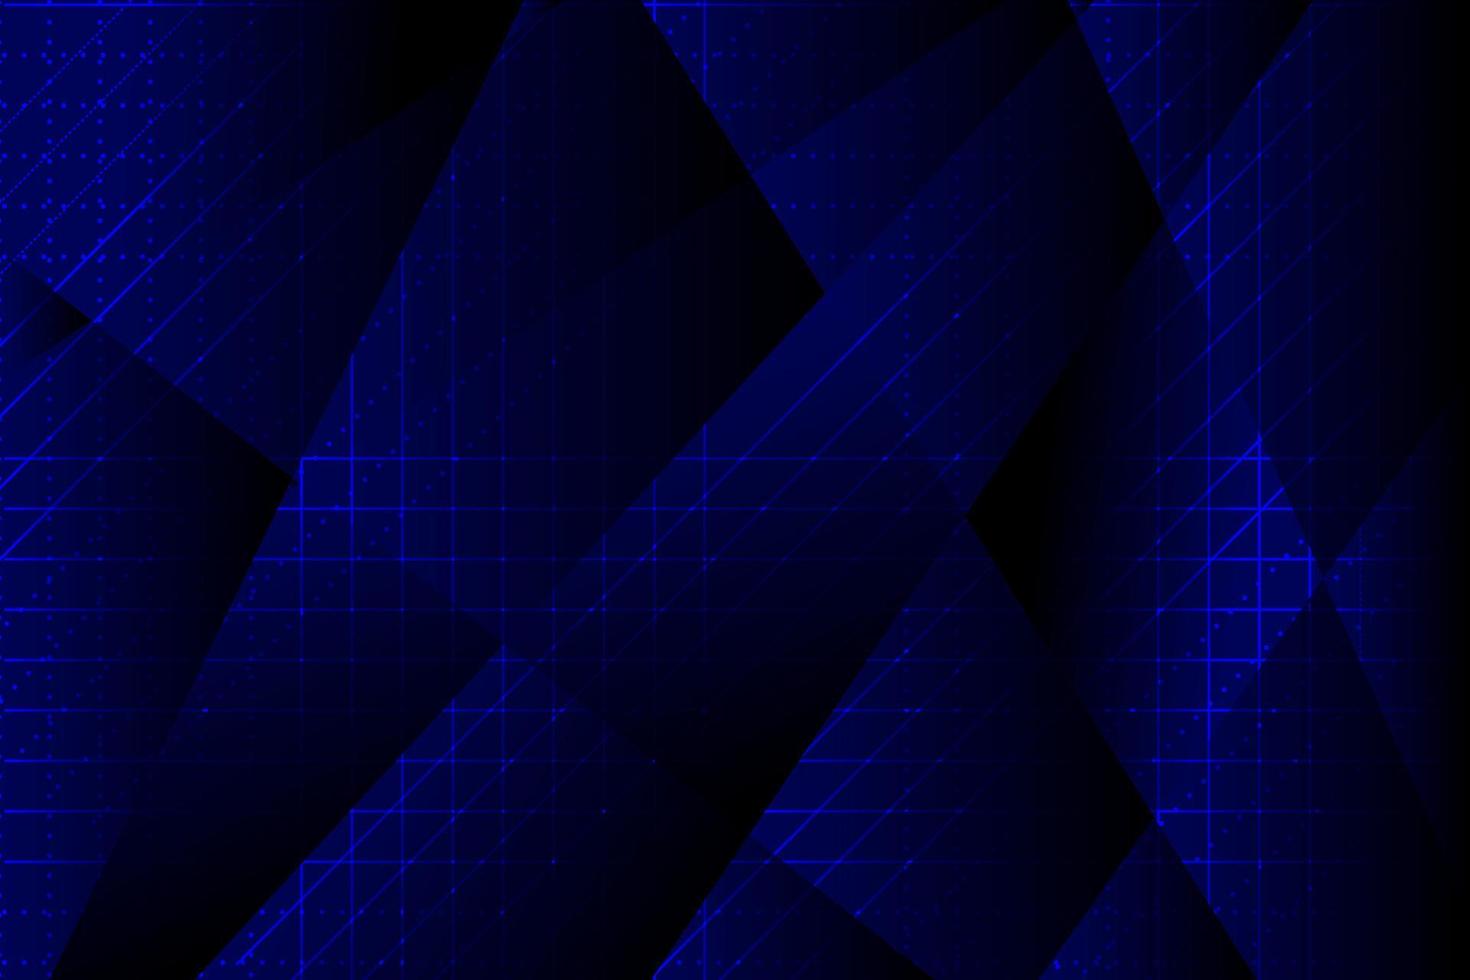 azul e preto com fundo de tecnologia abstrata de linhas e pontos. vetor